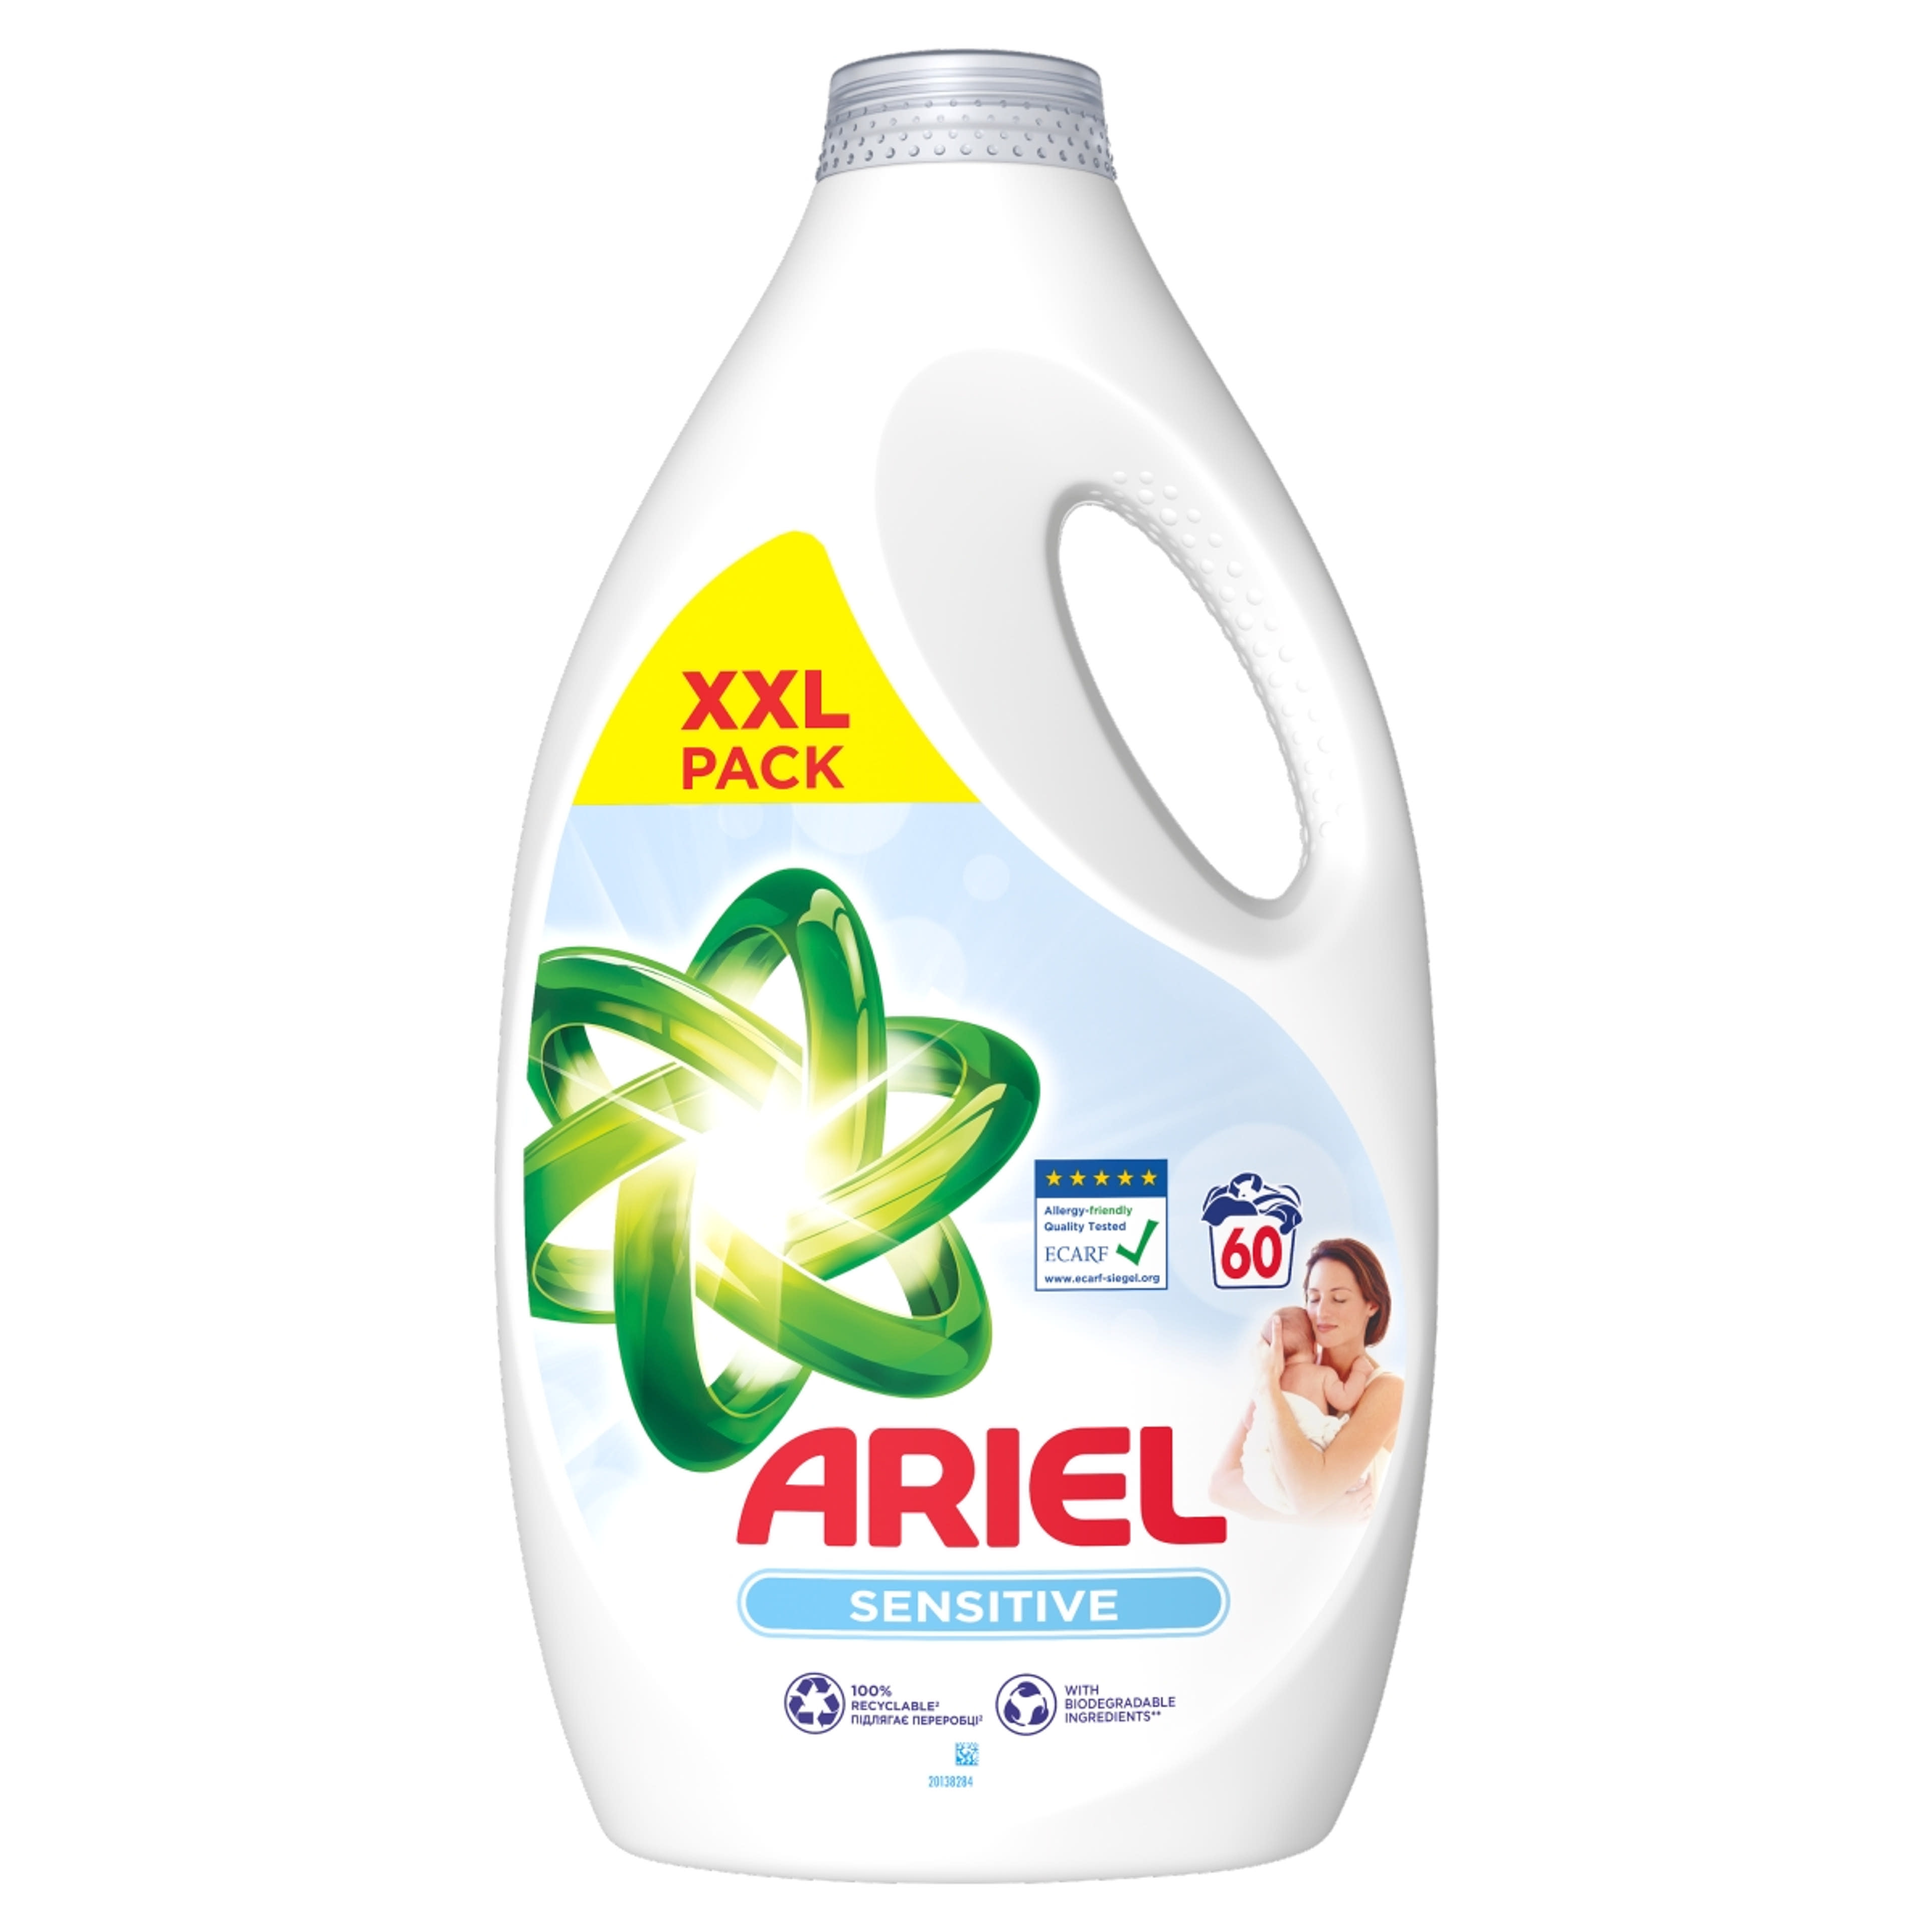 Ariel Sensitive Skin Clean & Fresh folyékony mosószer 60 mosáshoz - 3000 ml